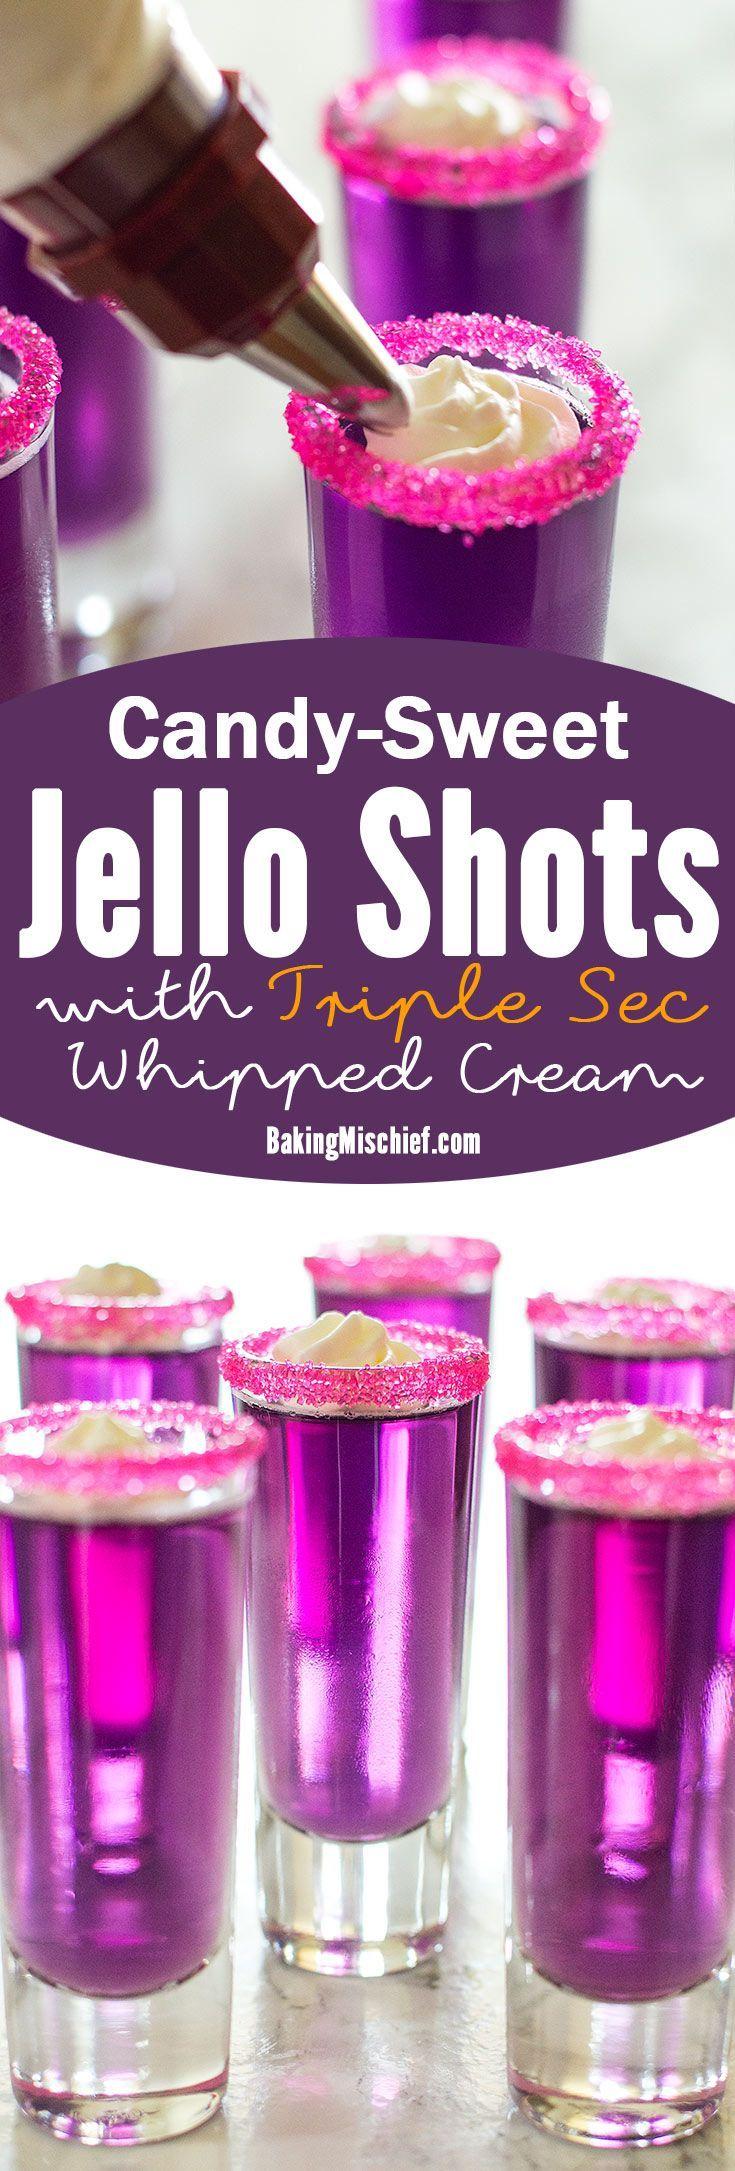 زفاف - Candy-Sweet Jello Shots With Triple Sec Whipped Cream